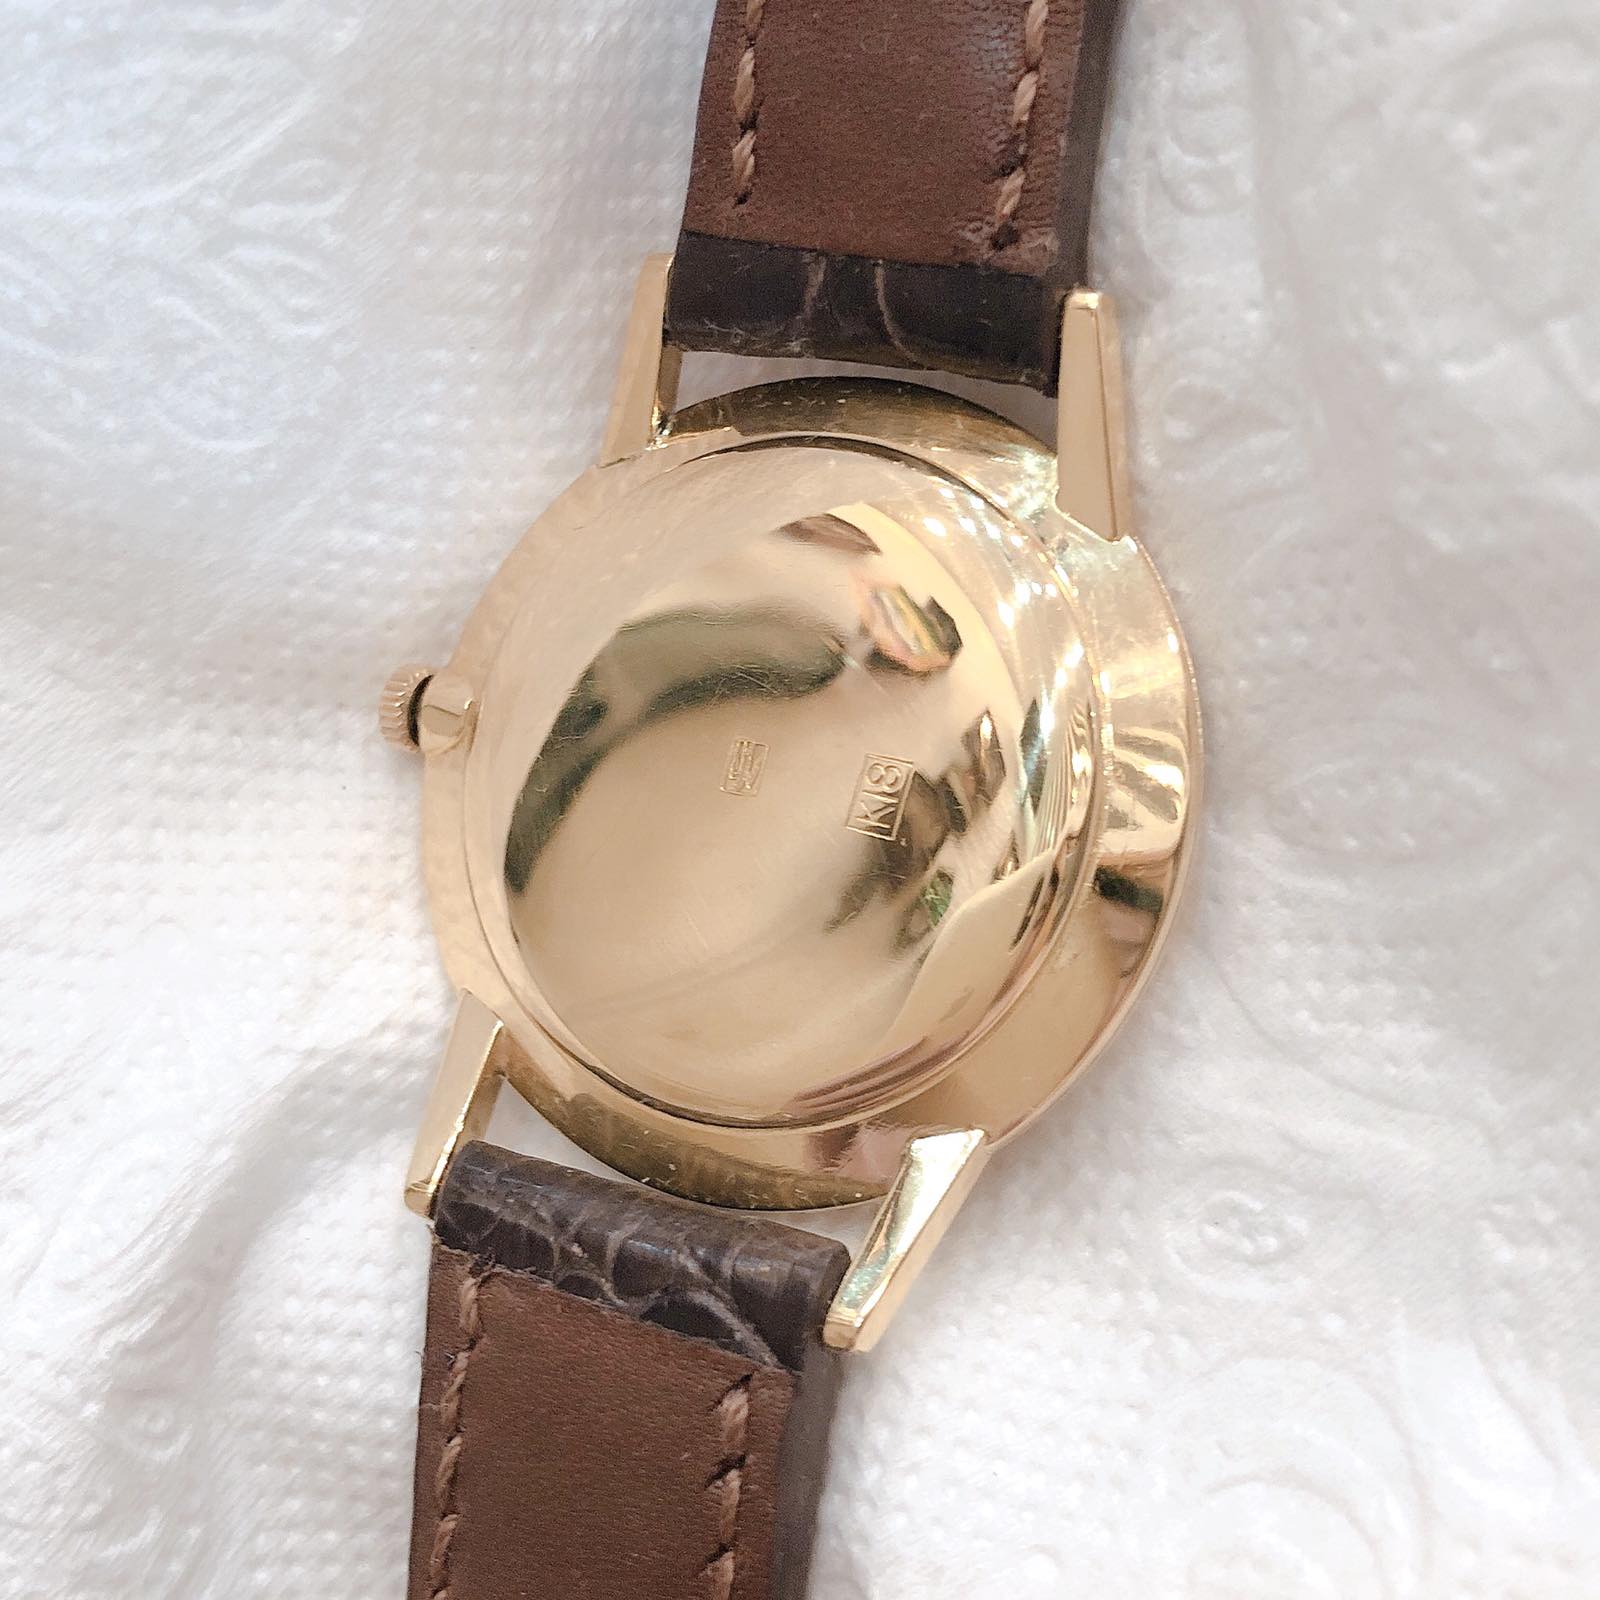 Đồng hồ cổ Seiko kim đĩa đính hột xoàn vỏ vàng đúc 18k đặc nguyên khối lên dây nhật bản 